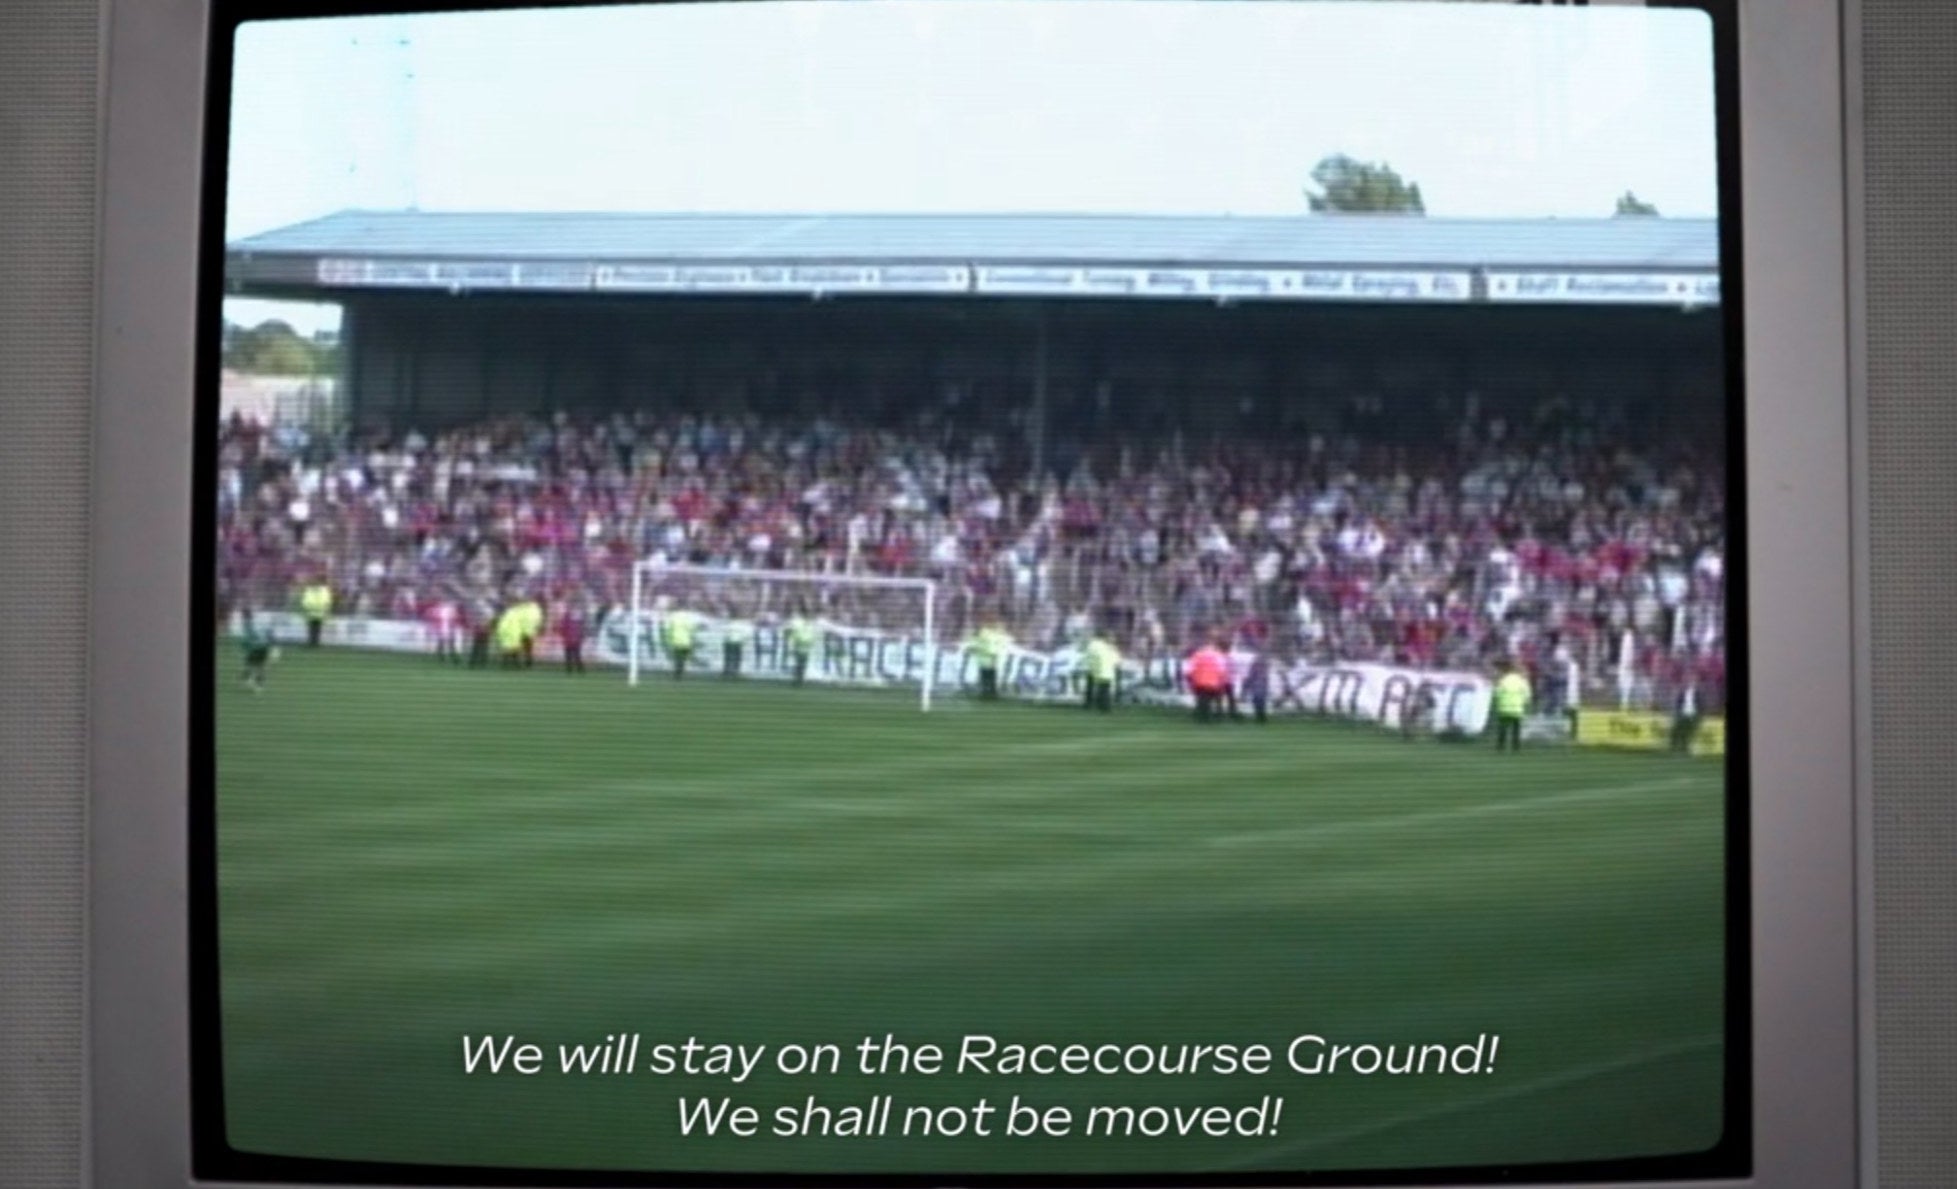 老雷克斯汉姆比赛录像,保存RACECOURSE"旗帜在球场